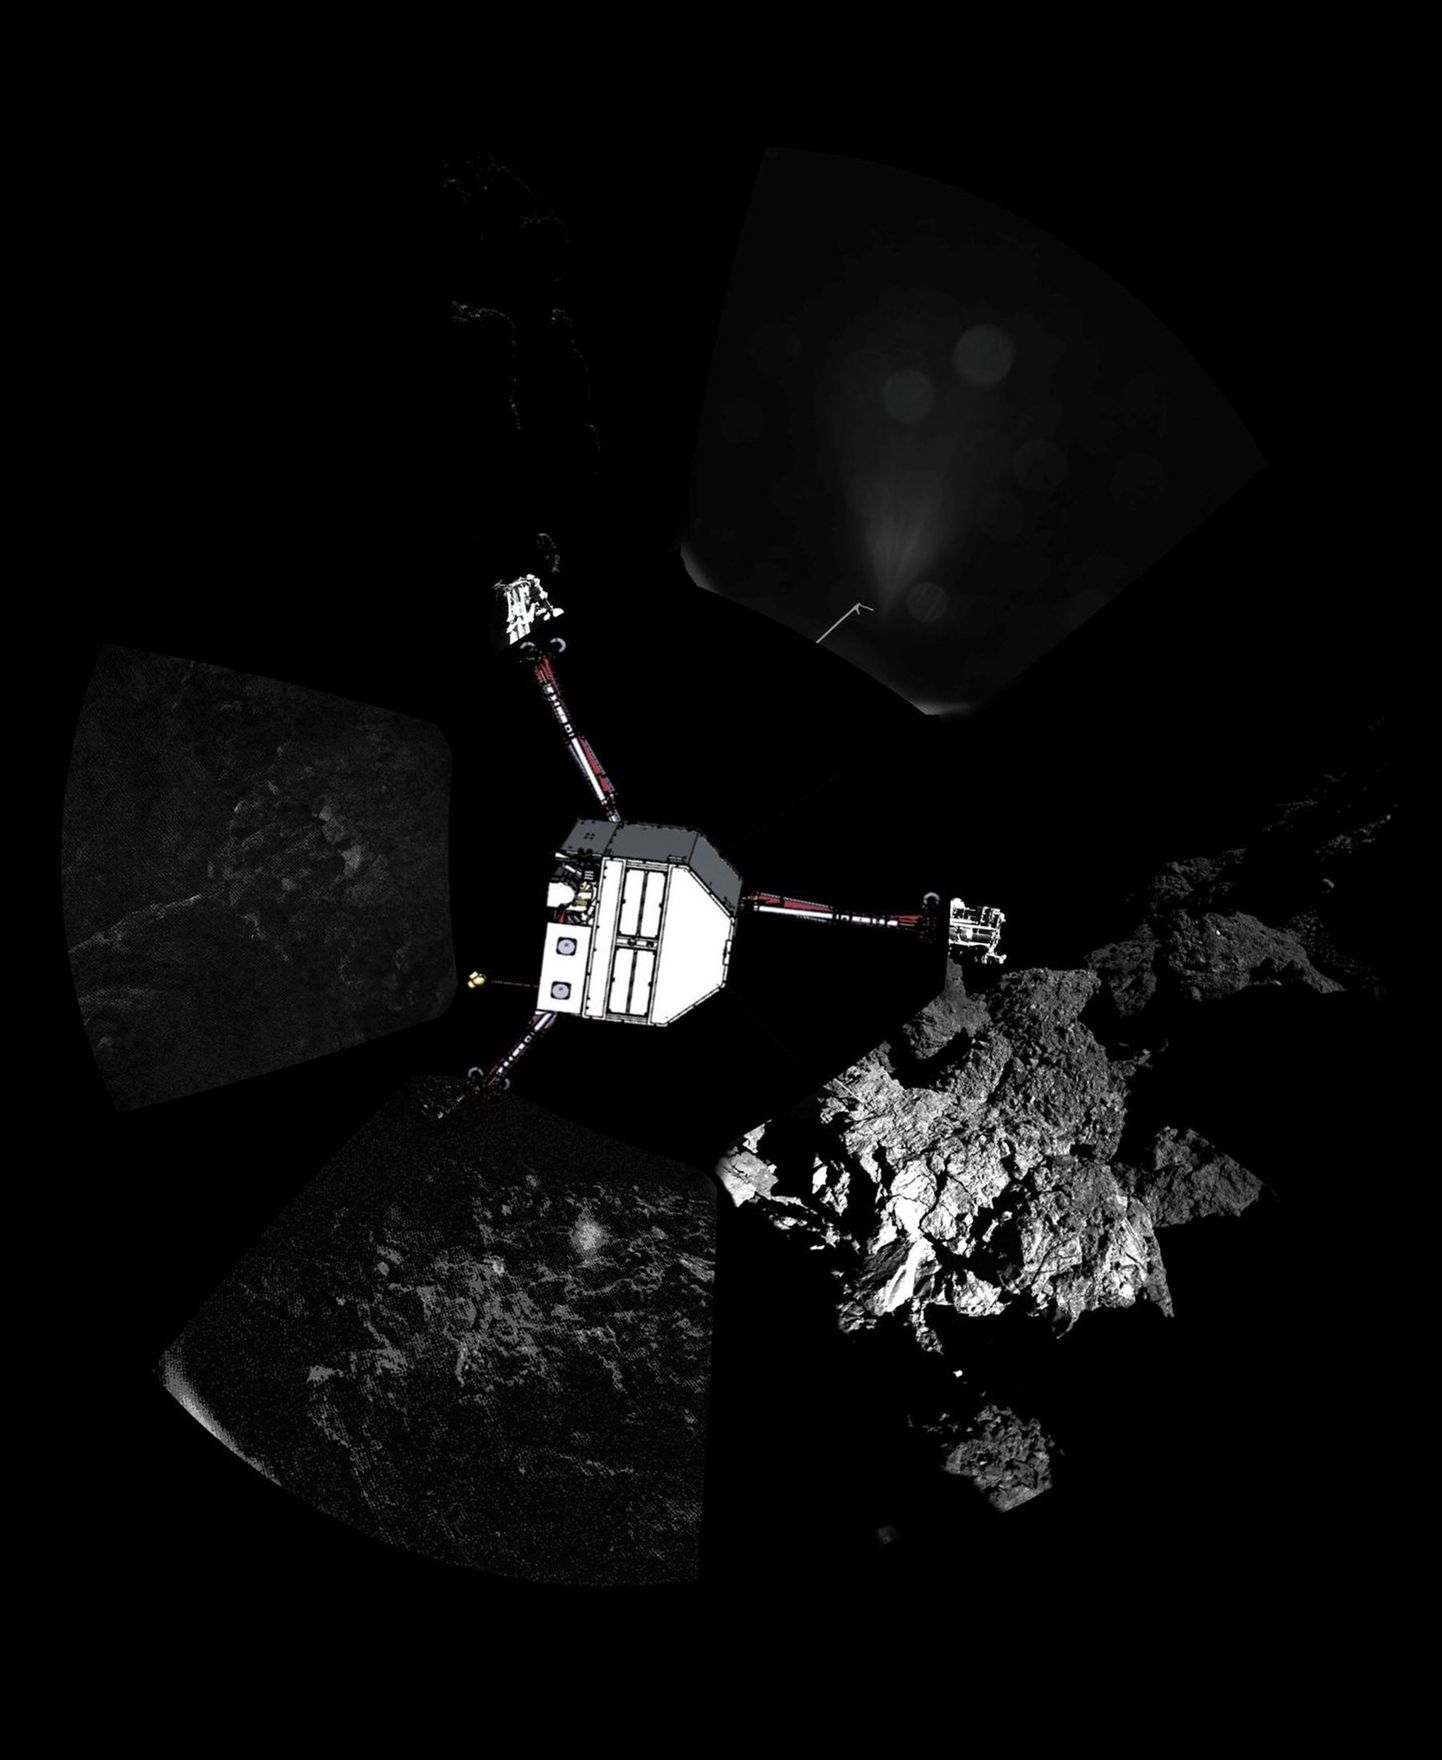 Panoraamfoto uurimisrobotist Philae komeedil 67P